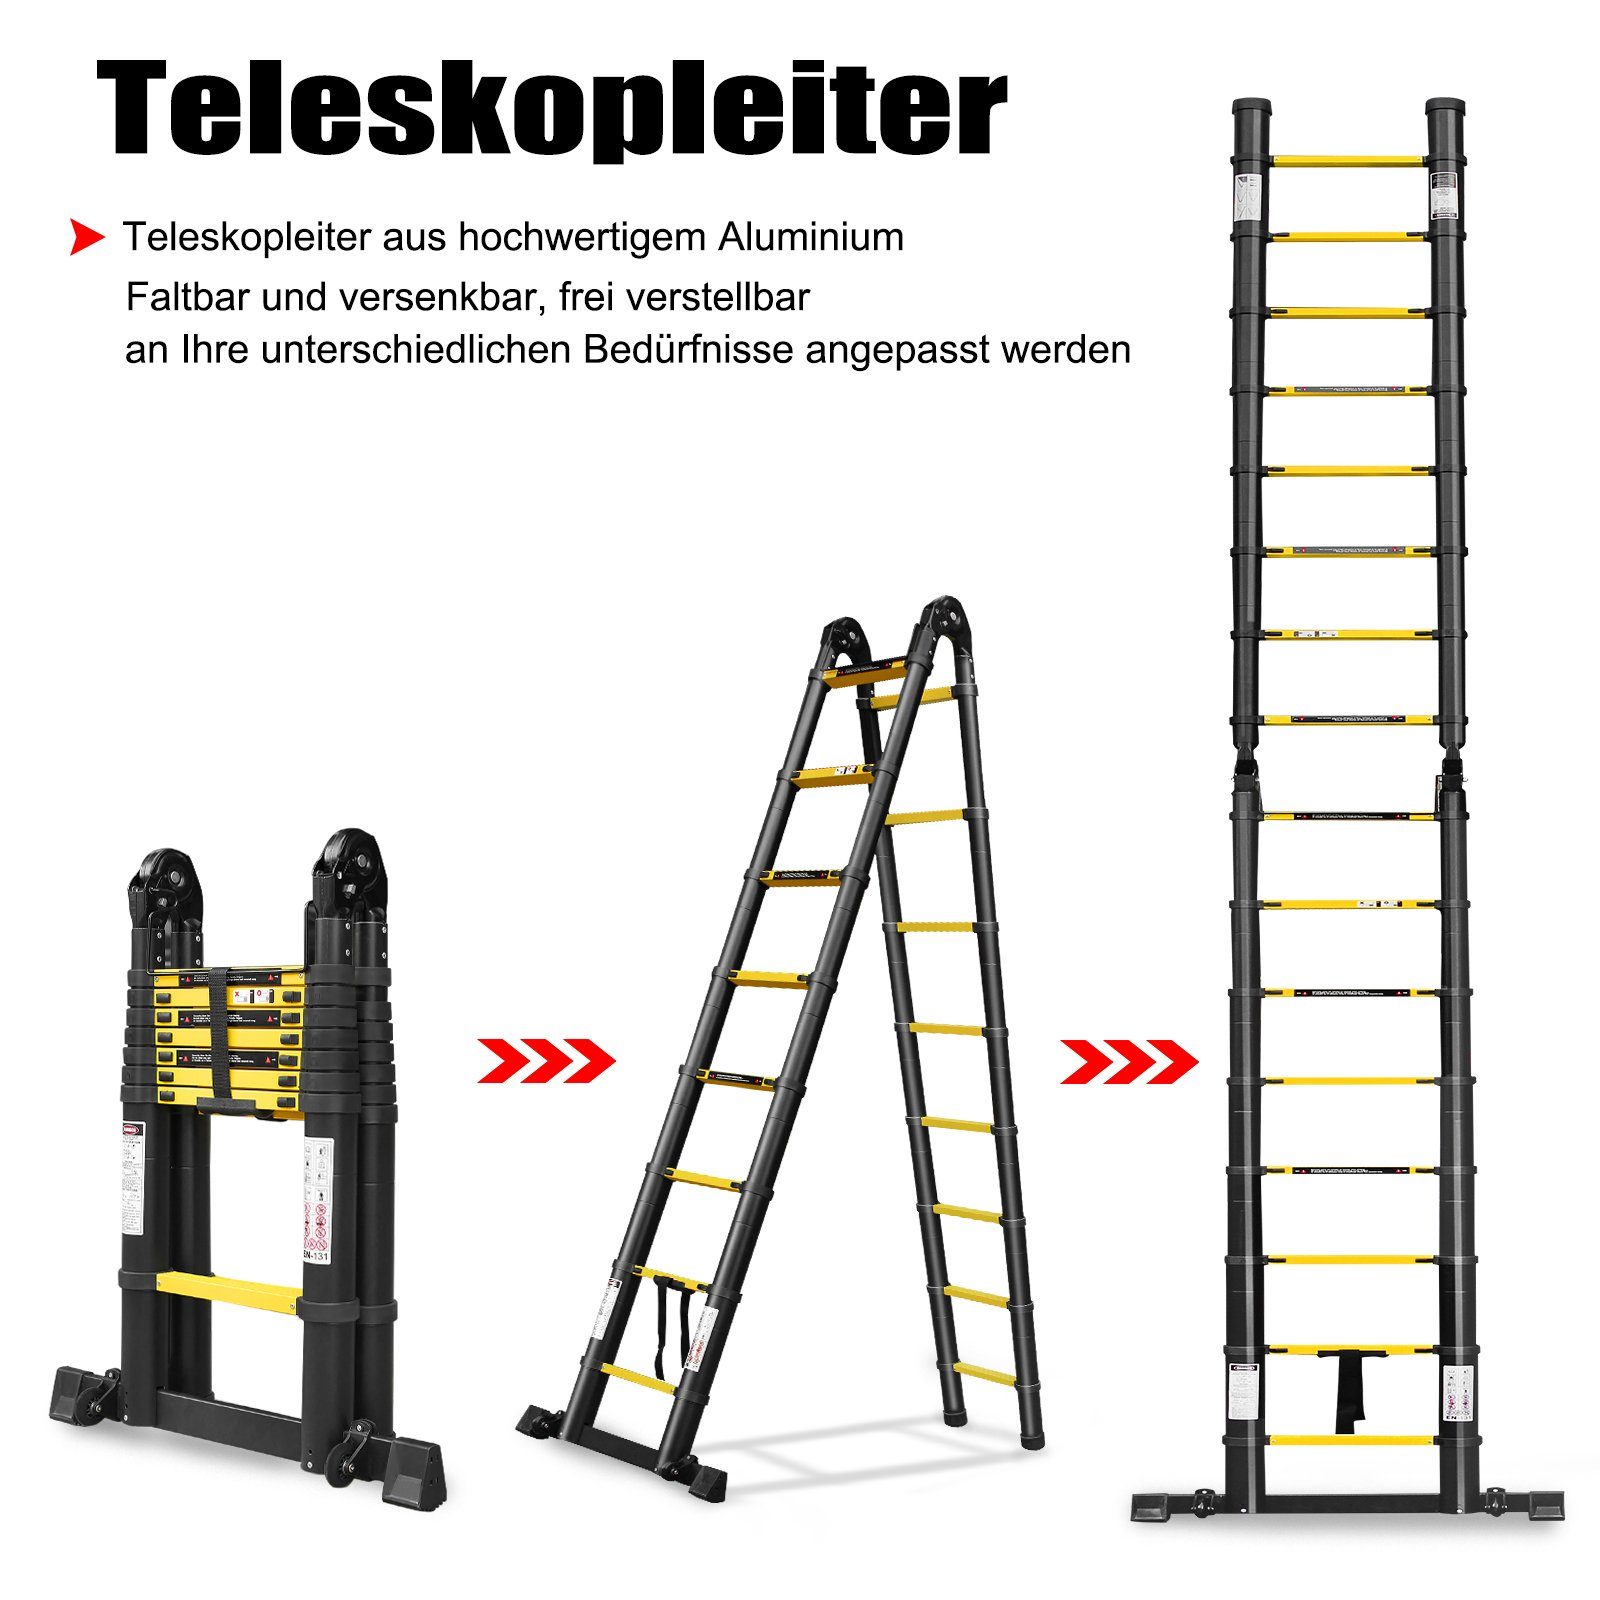 3,8m Aluleiter 13 Sprossen Mehrzweckleiter Teleskopleiter Stehleiter Ladder 